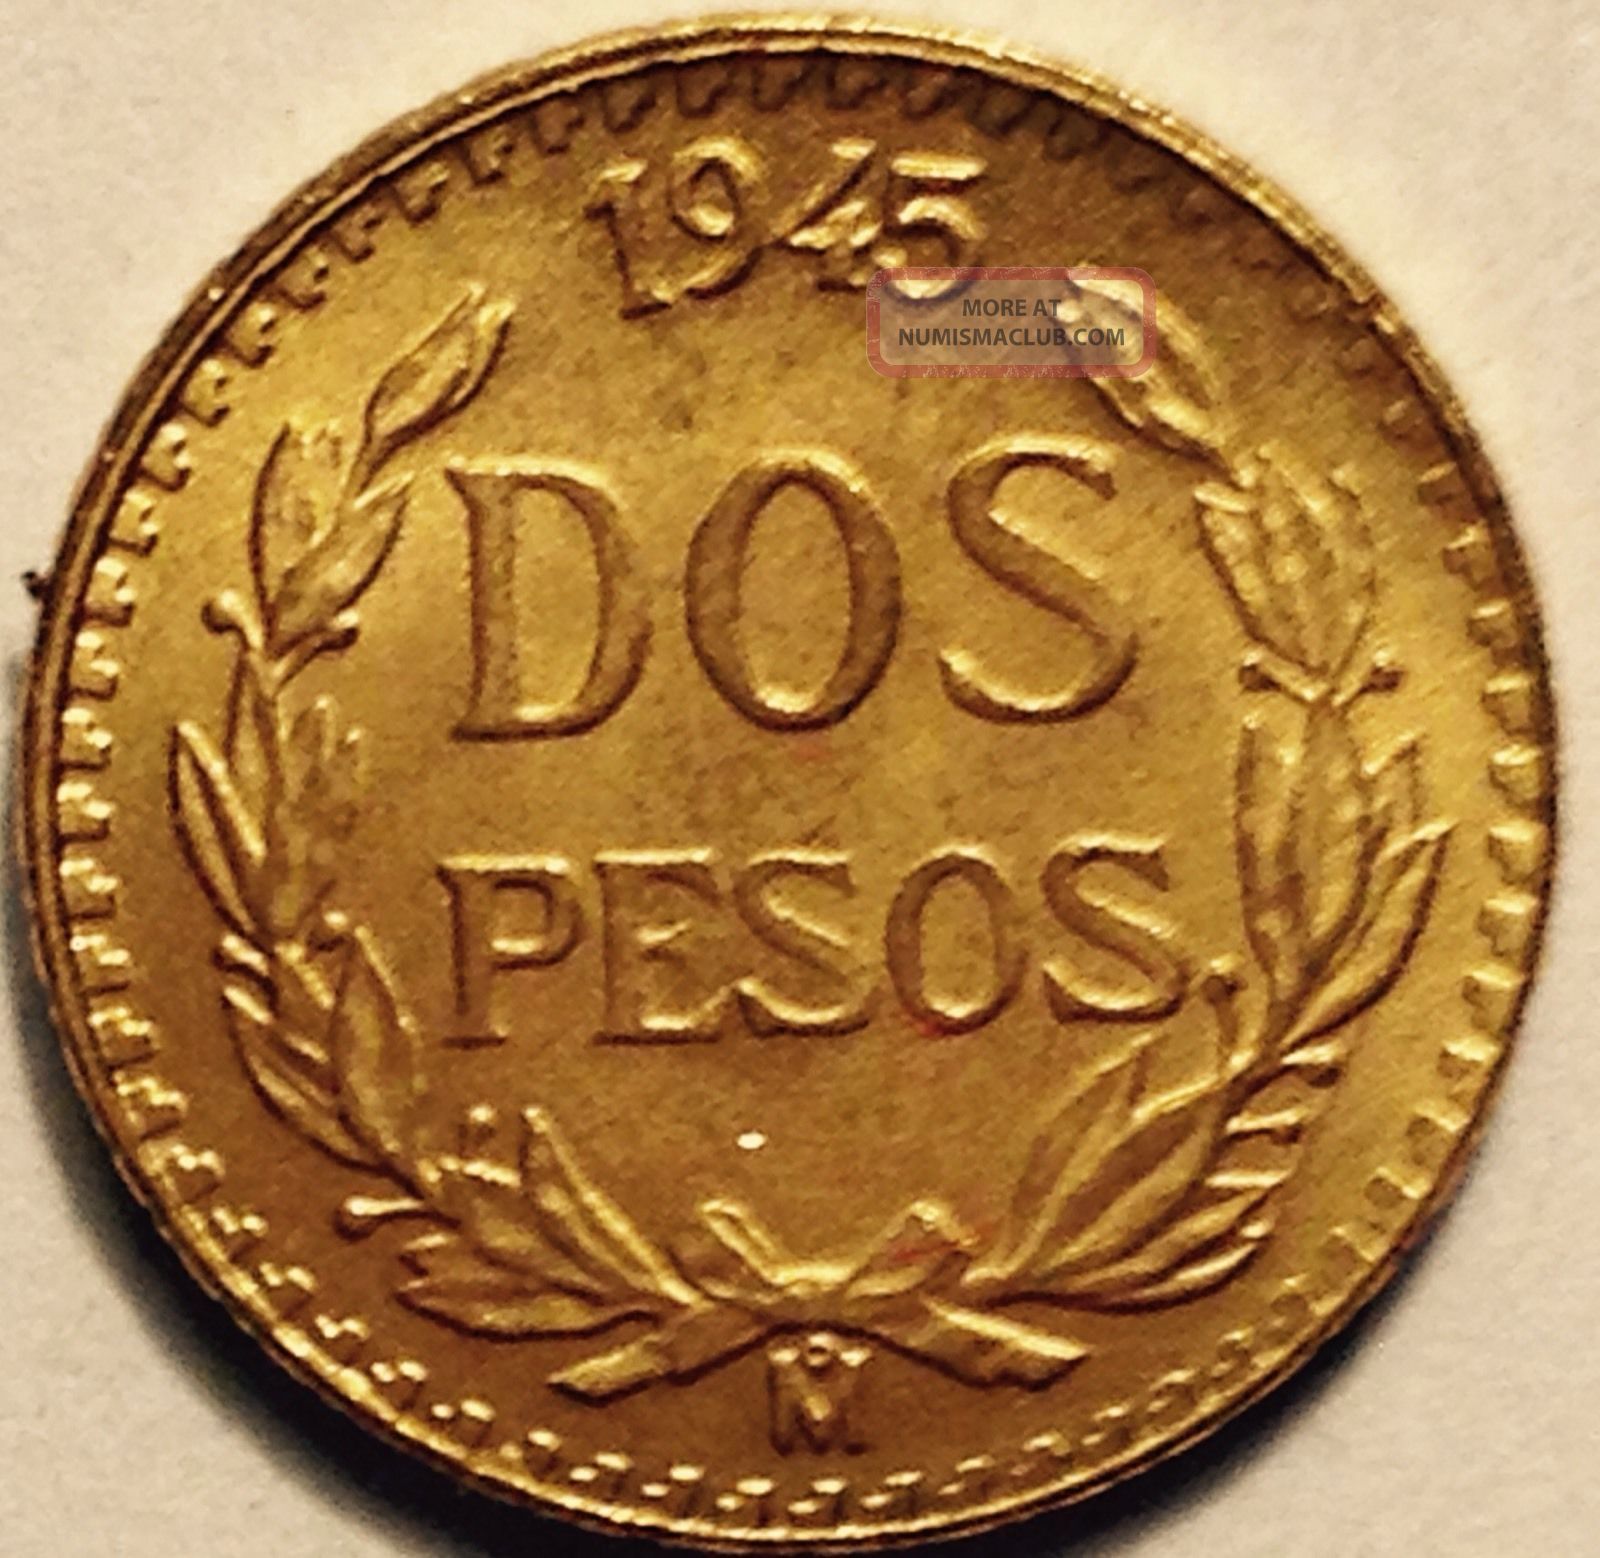 1945_dos_pesos_gold_coin_mexico__2_lgw.j